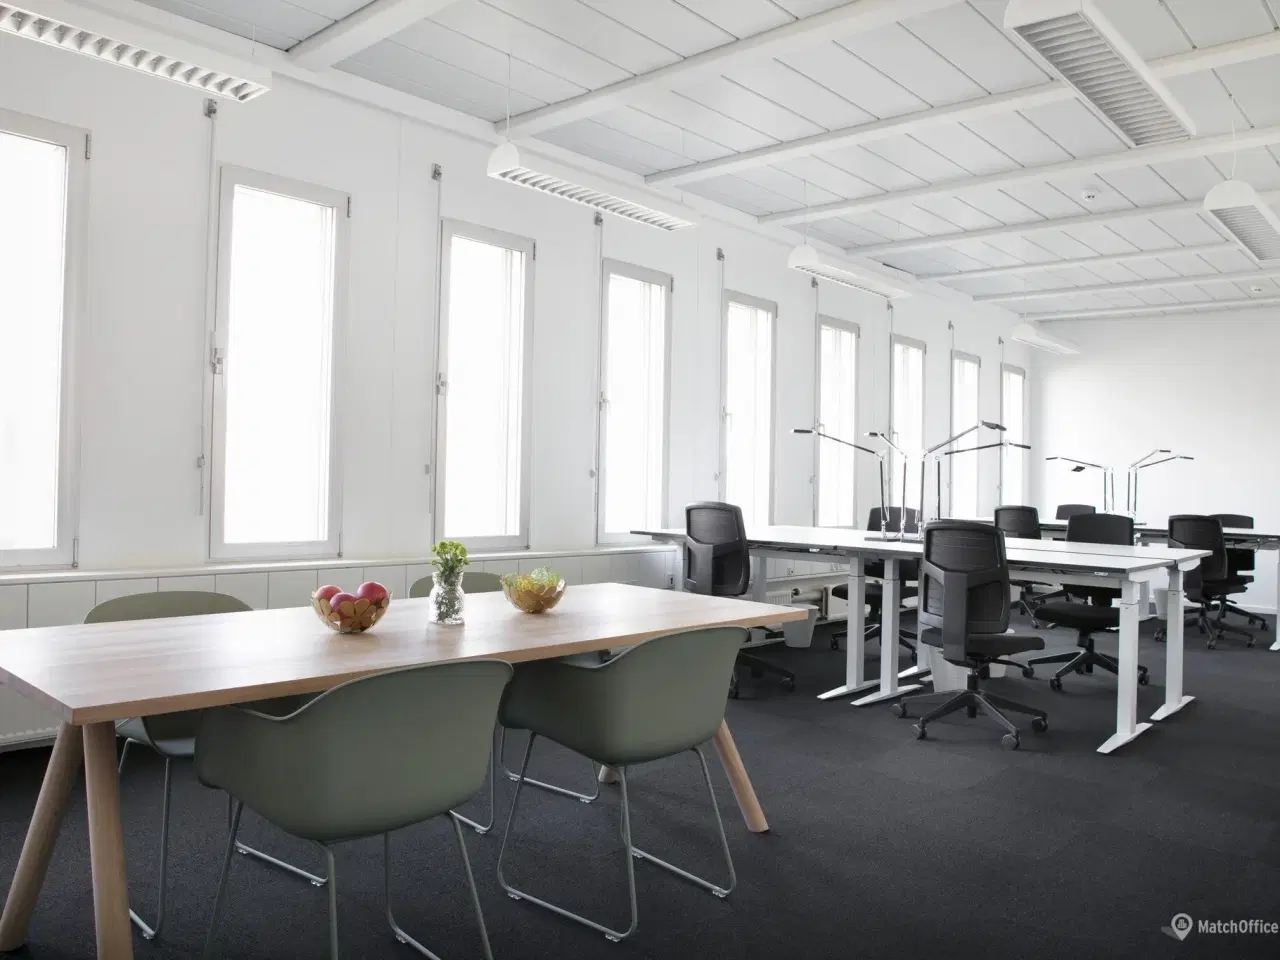 Billede 9 - Billigt kontor i Danmarks svar på Silicon Valley?